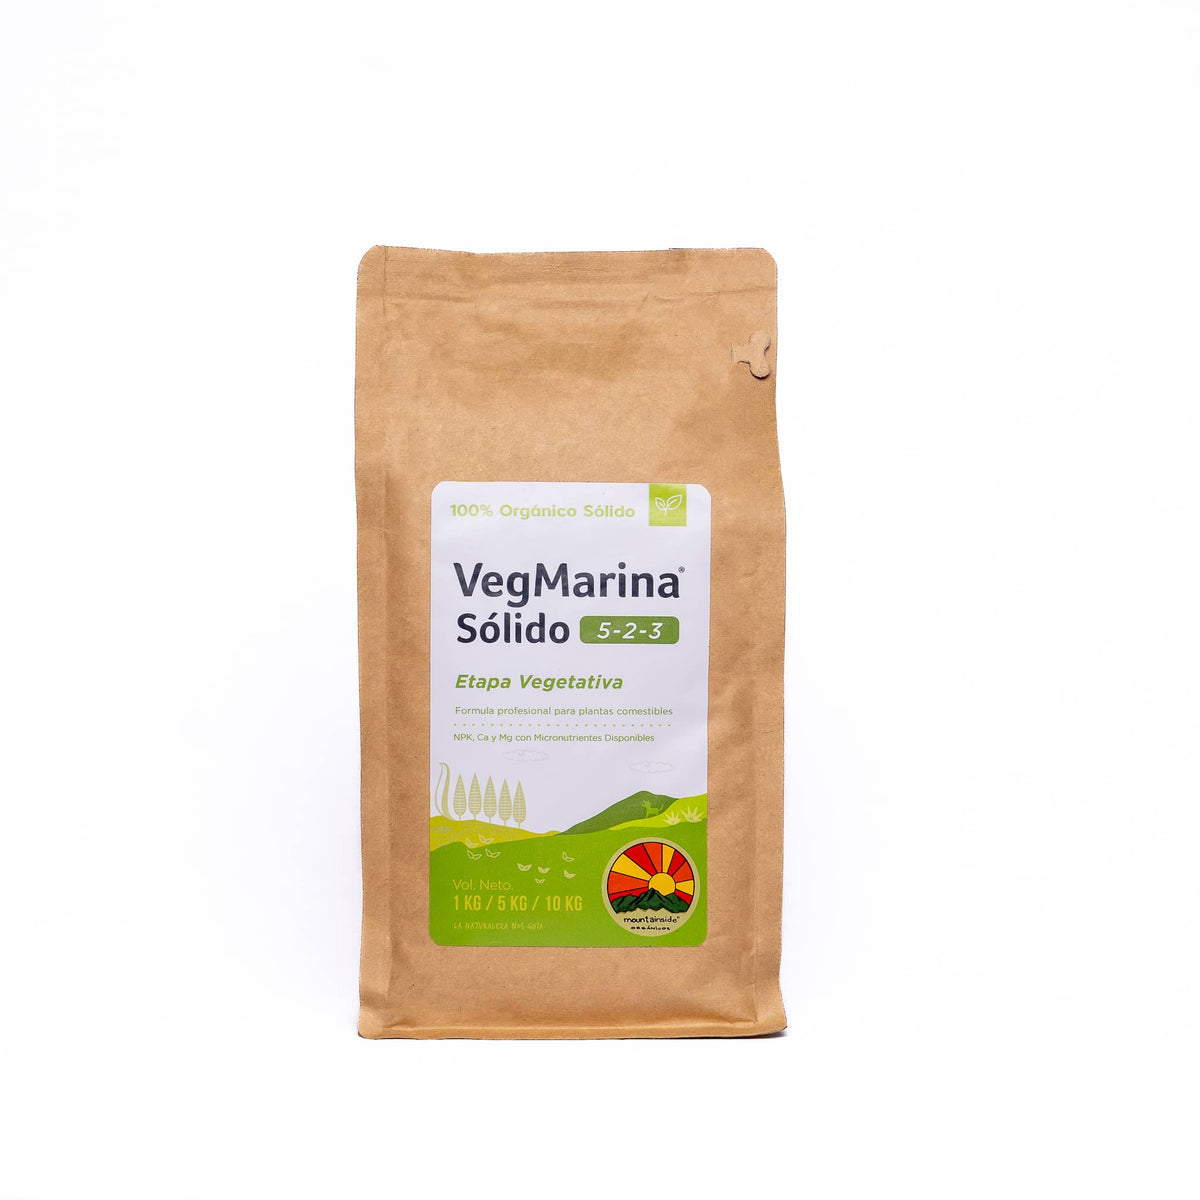 VegMarina® Sólido - Fertilizante Orgánico para Etapa Vegetativa